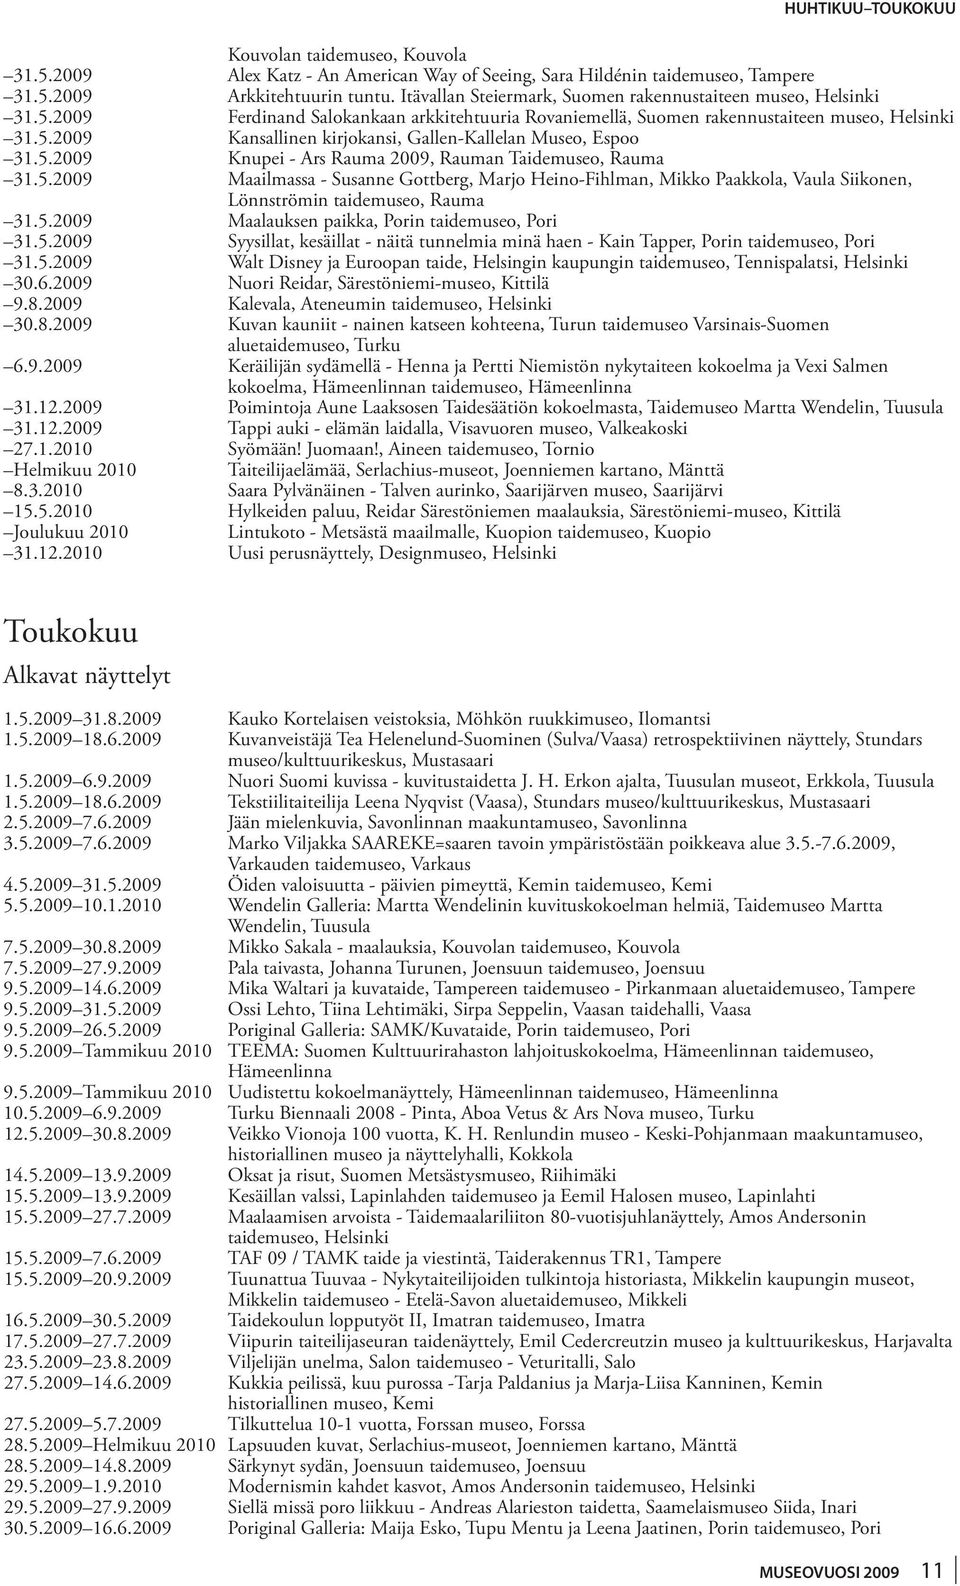 5.2009 Knupei - Ars Rauma 2009, Rauman Taidemuseo, Rauma 31.5.2009 Maailmassa - Susanne Gottberg, Marjo Heino-Fihlman, Mikko Paakkola, Vaula Siikonen, Lönnströmin taidemuseo, Rauma 31.5.2009 Maalauksen paikka, Porin taidemuseo, Pori 31.